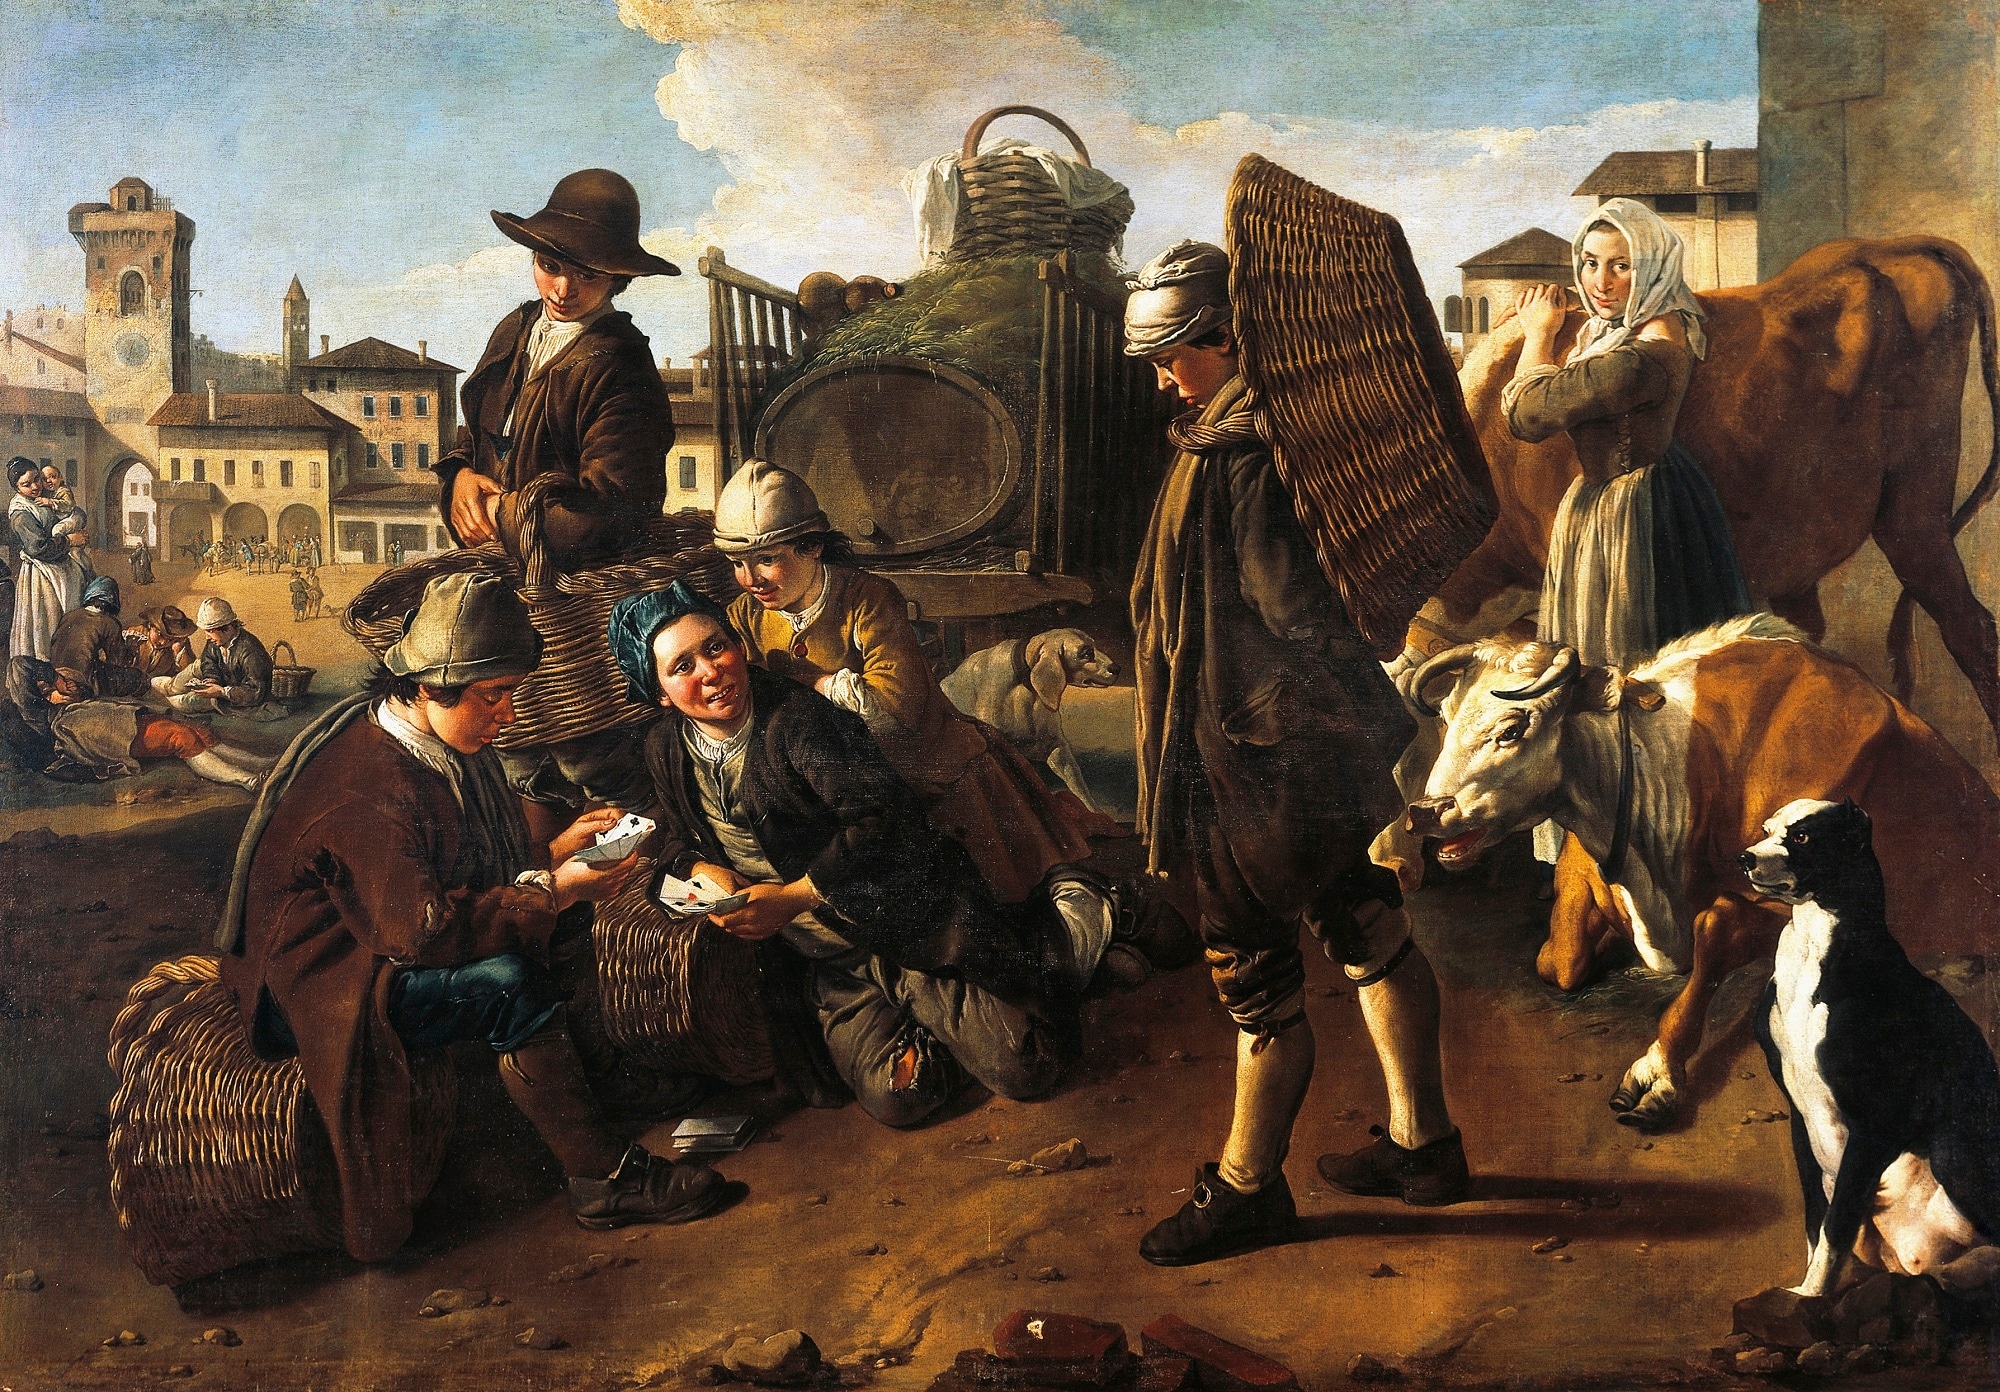 Giacomo Ceruti, Scena di mercato, olio su tela, 210x298cm., Galleria Civica d'Arte Moderna e Contemporanea, Torino